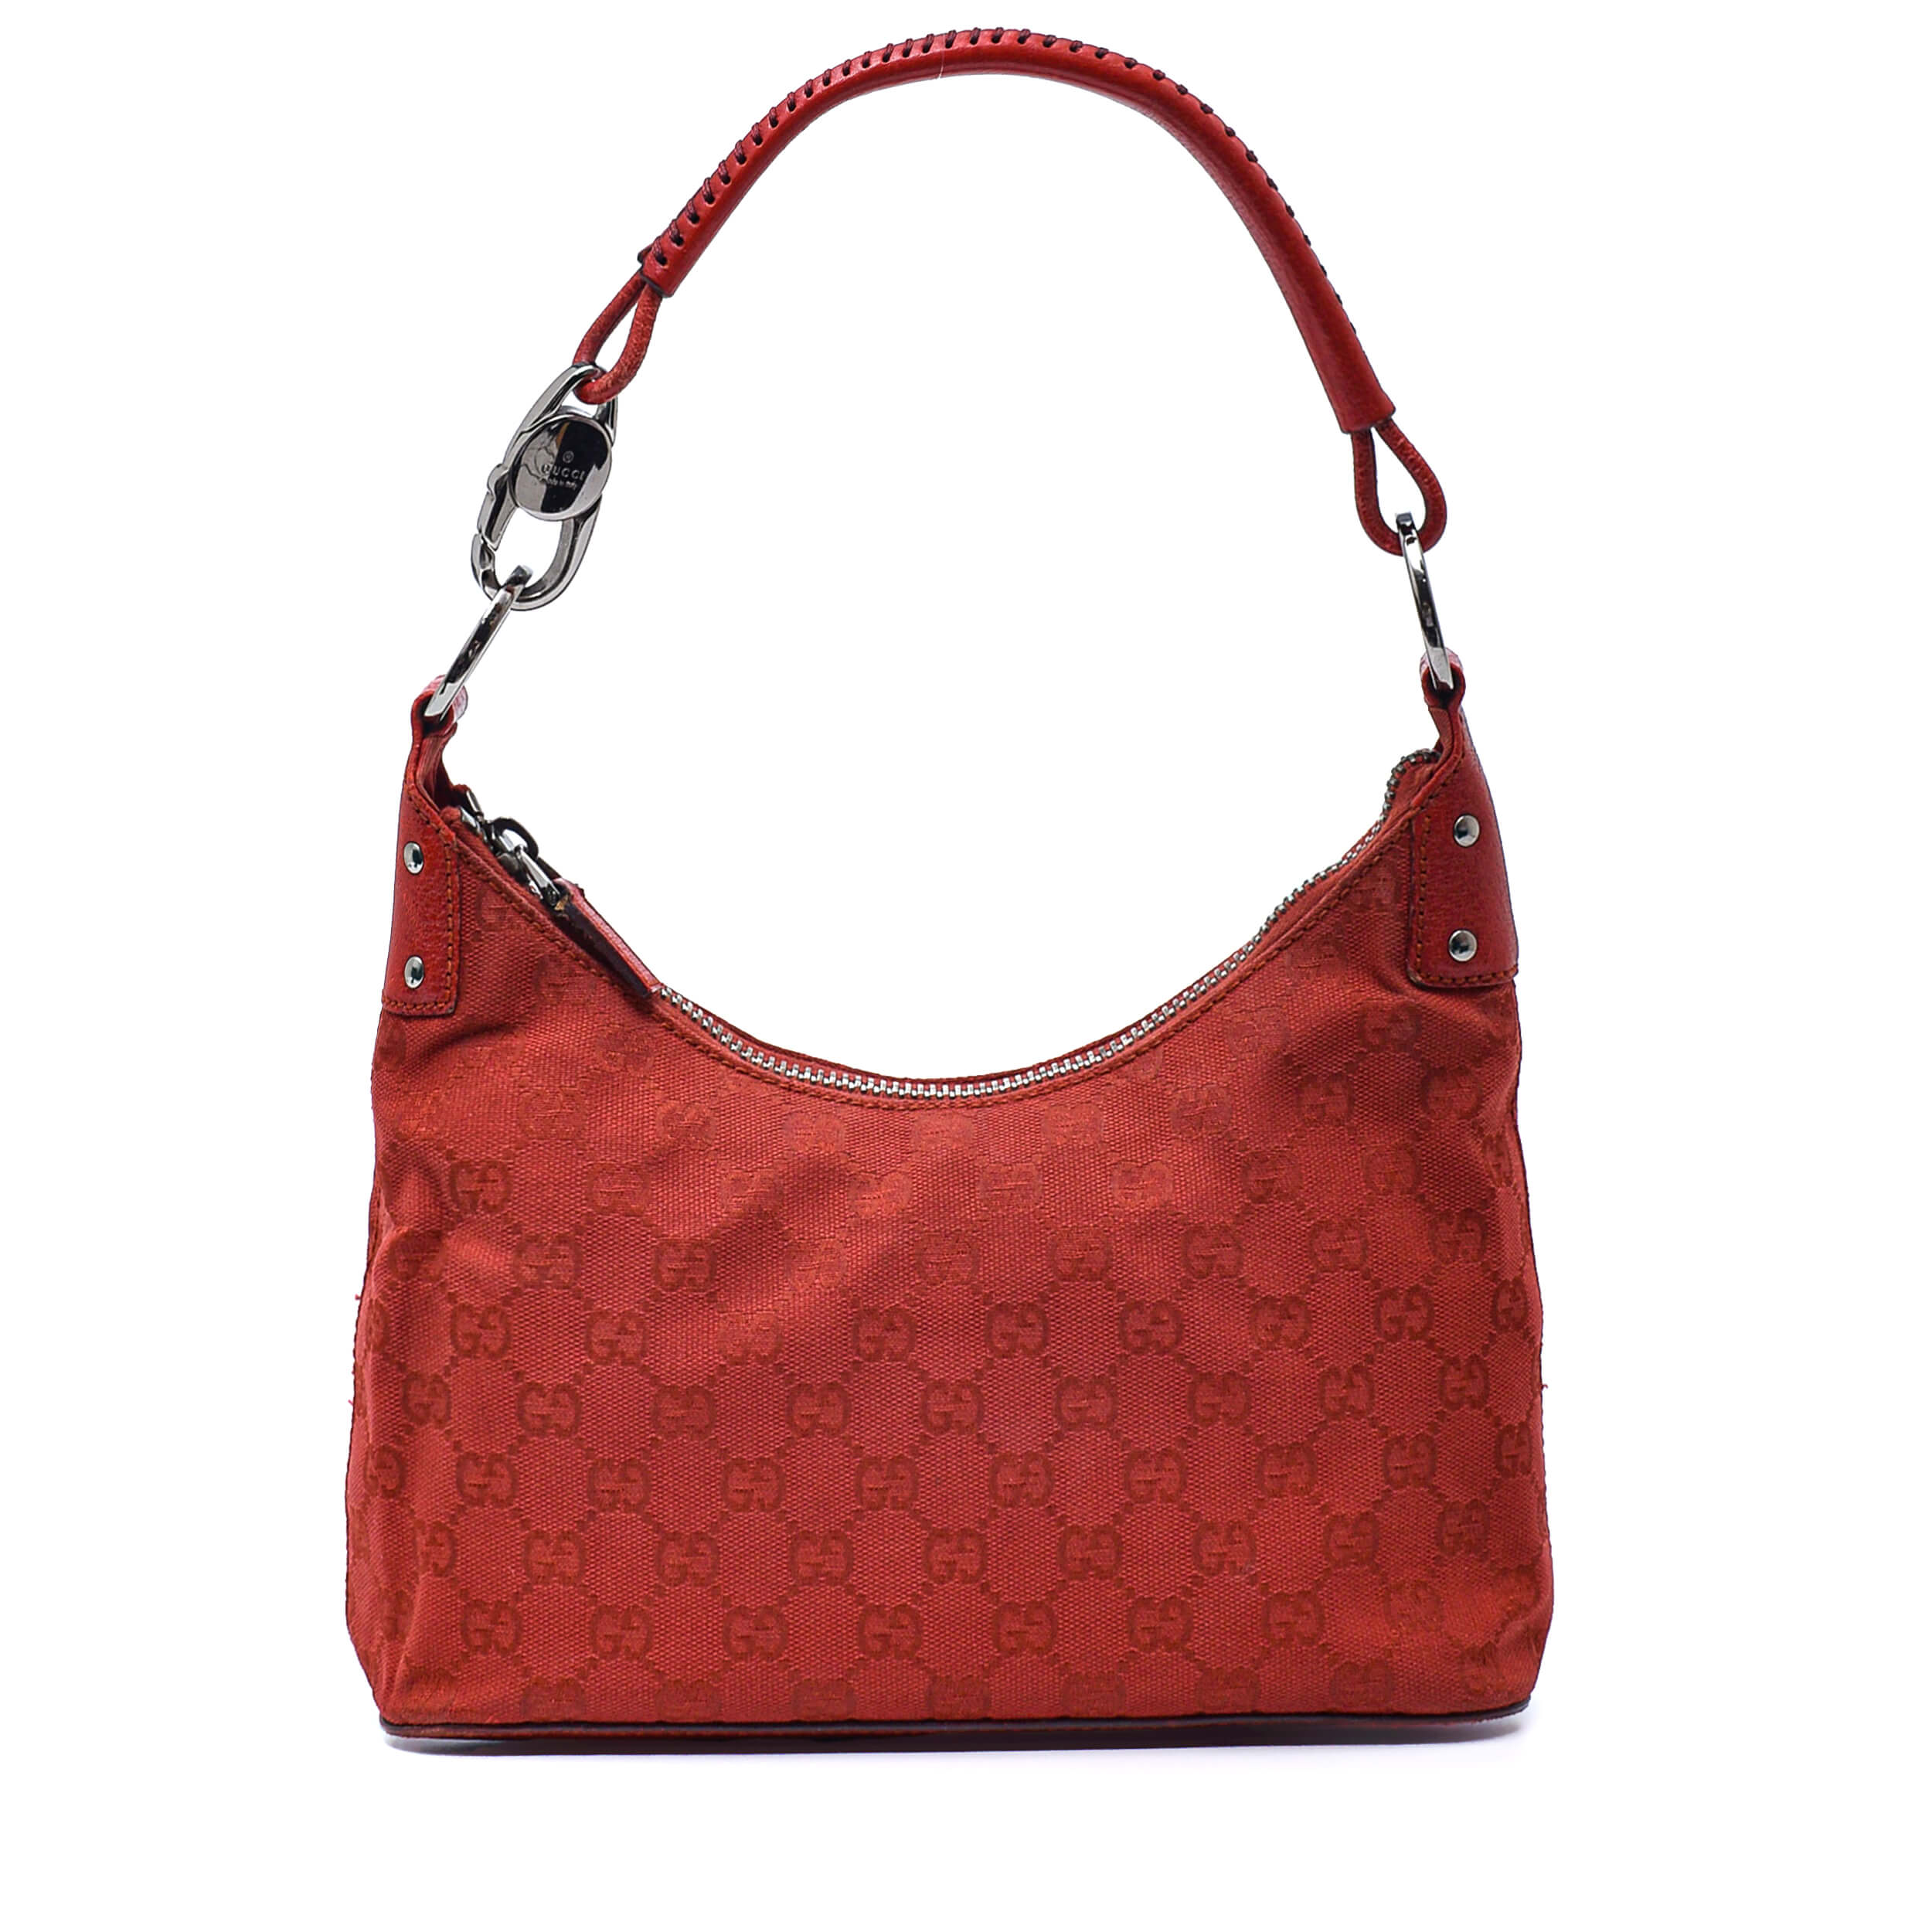 Gucci - Red GG Supreme Canvas Small Hobo Bag